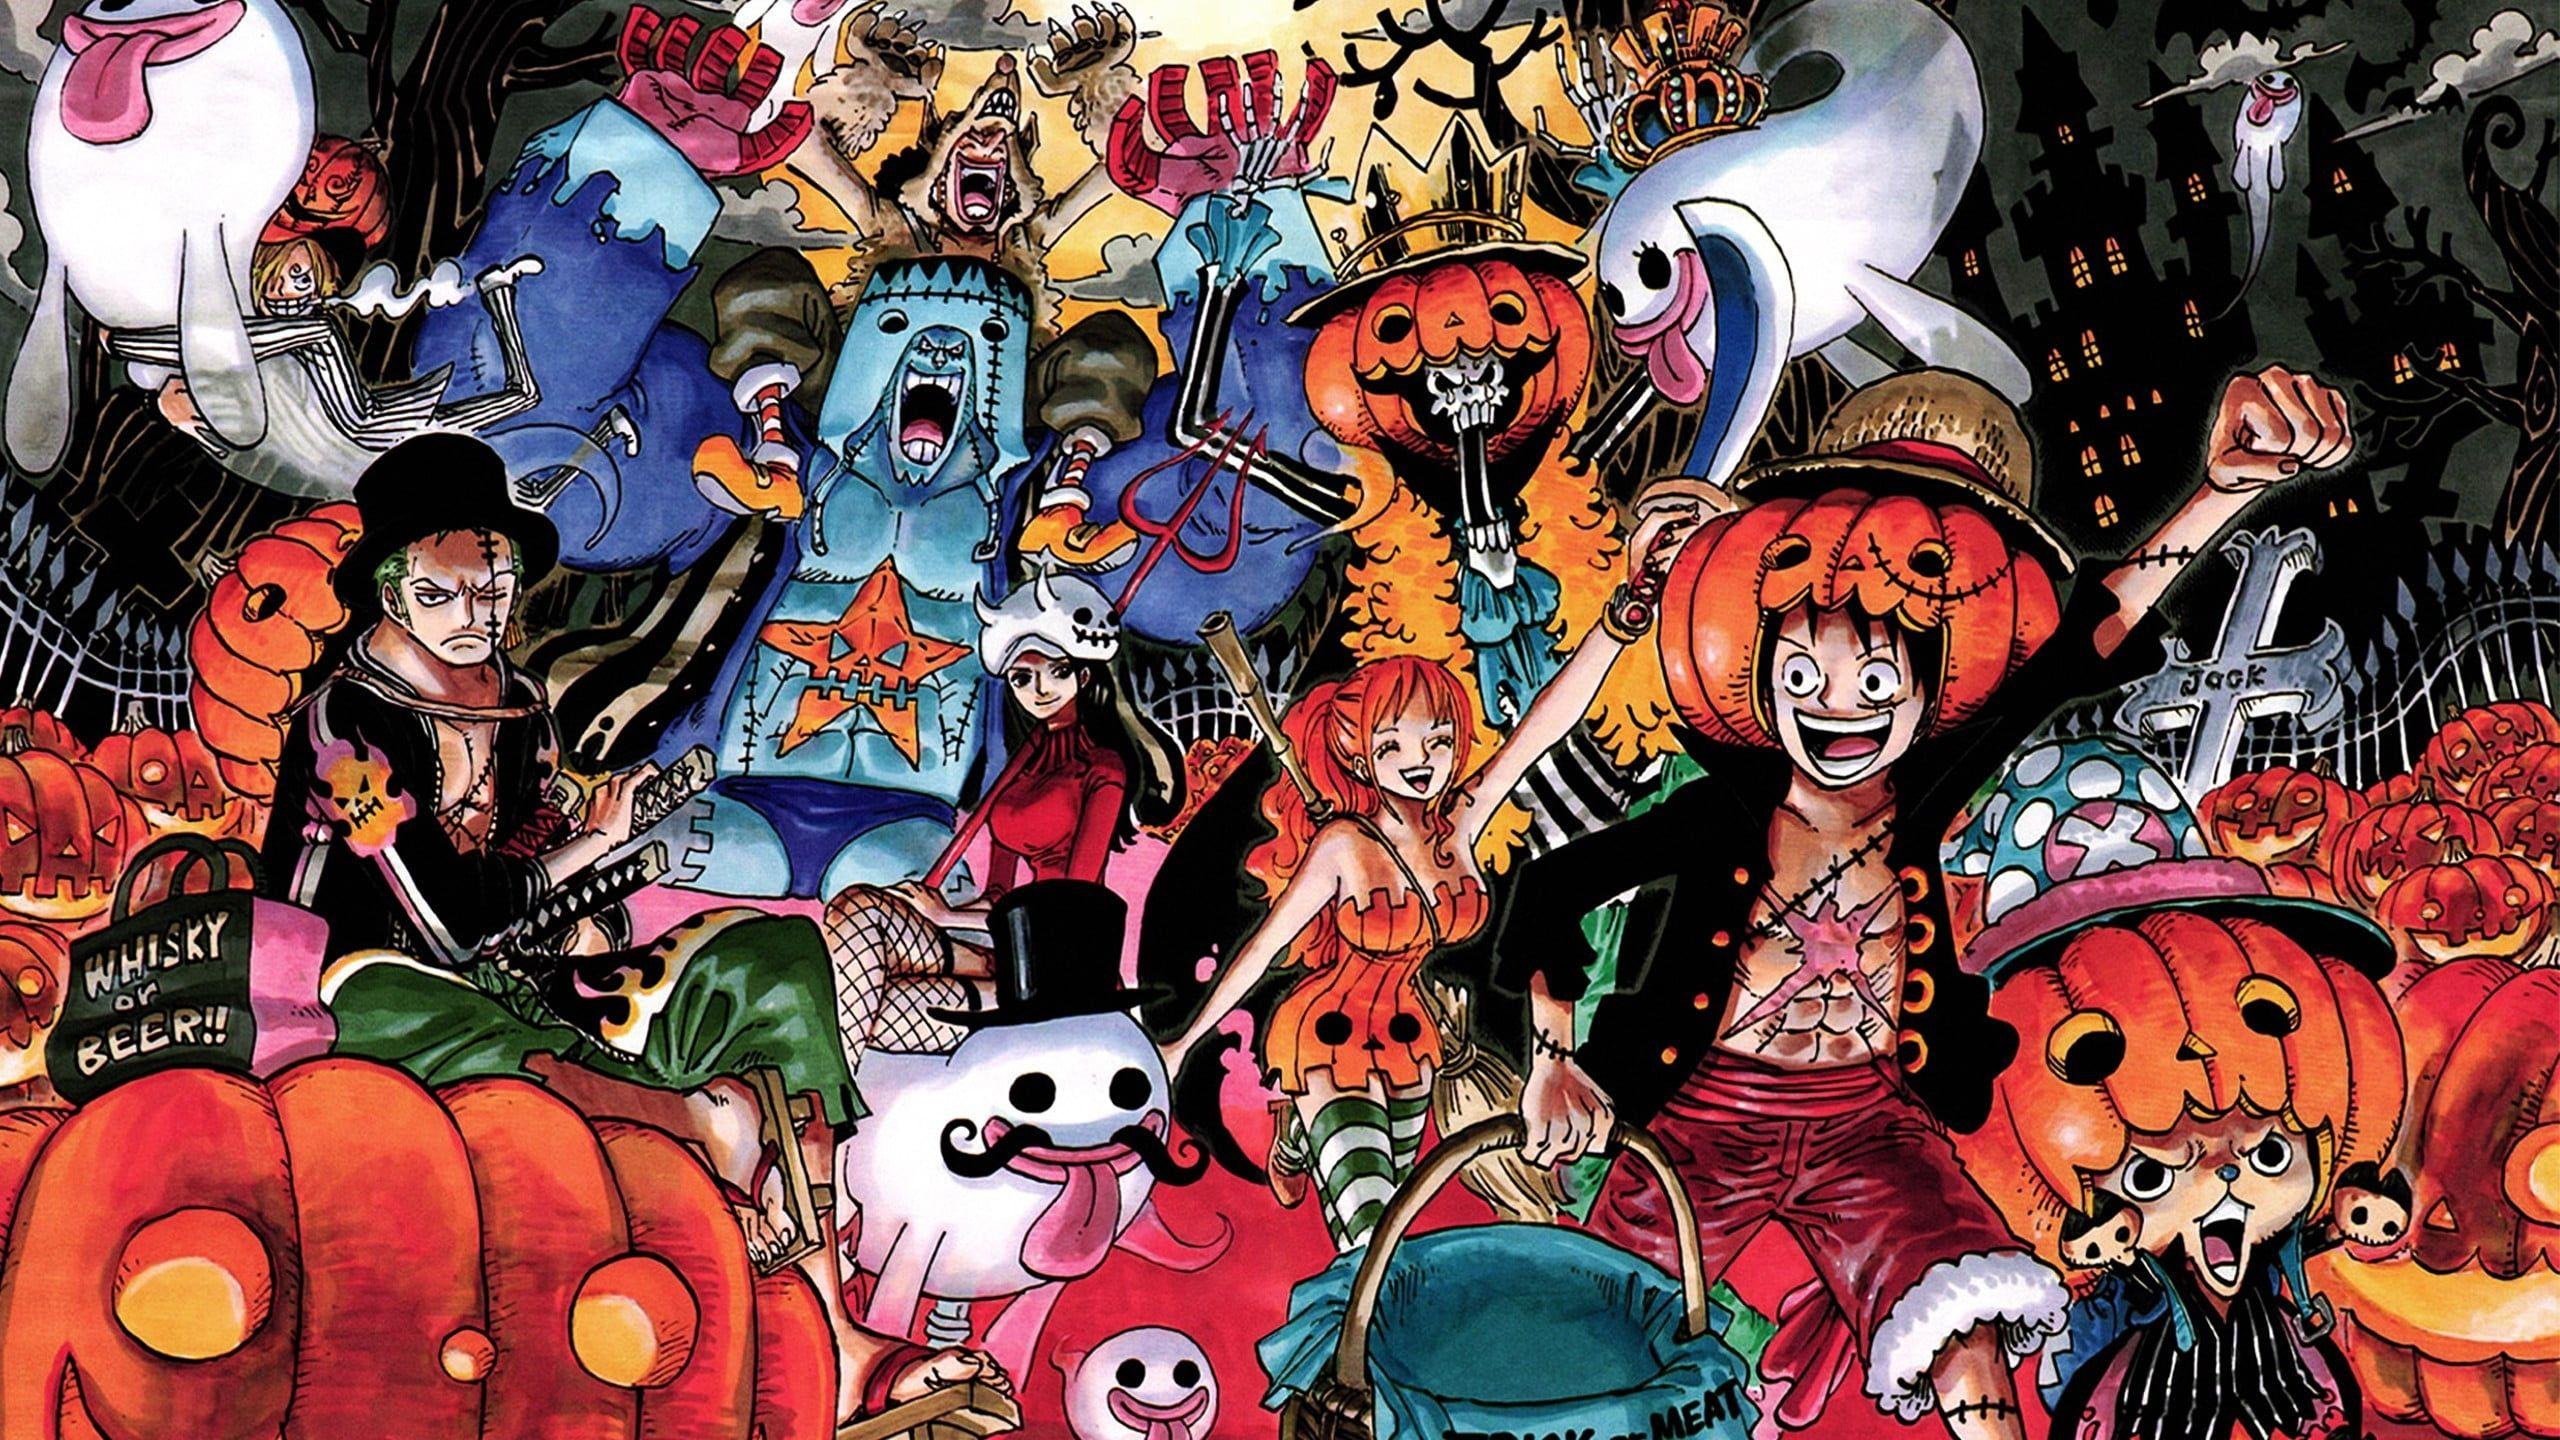 One Piece 3D Wallpapers là sự lựa chọn phù hợp cho các fan hâm mộ của bộ anime này. Những hình ảnh sống động và tuyệt đẹp của tất cả những nhân vật yêu thích trong One Piece sẽ khiến bạn cảm thấy như đang sống trong một thế giới thần thoại.